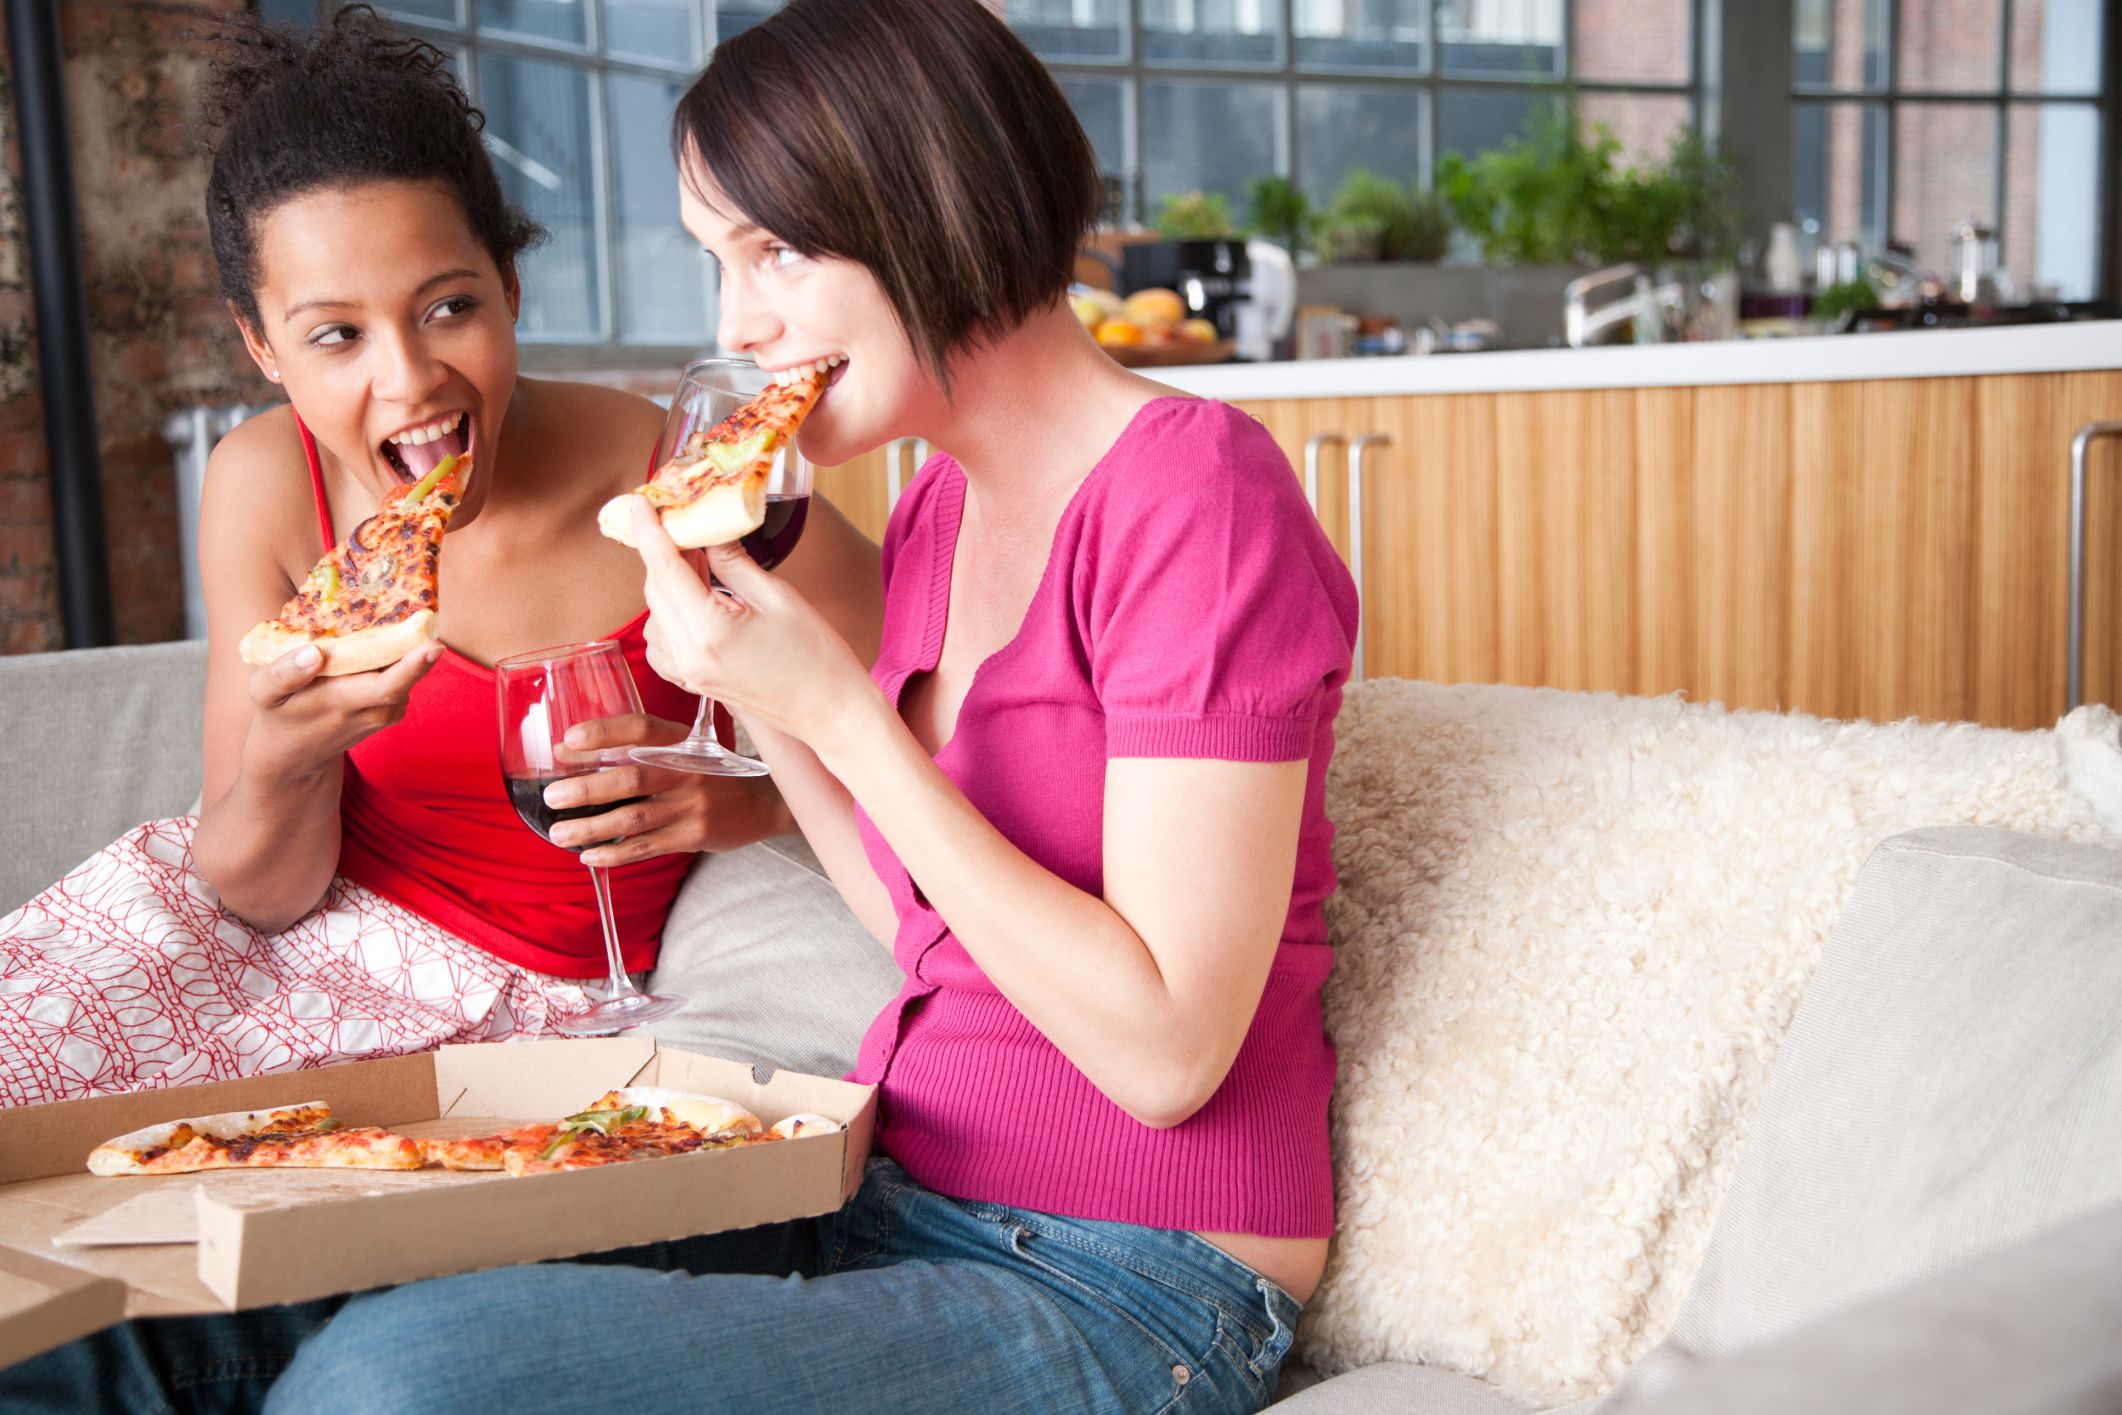 Allowed to live. Пицца женщина. Девушка наслаждение пиццей. Аппетитная пища и люди. Люди едят пиццу.